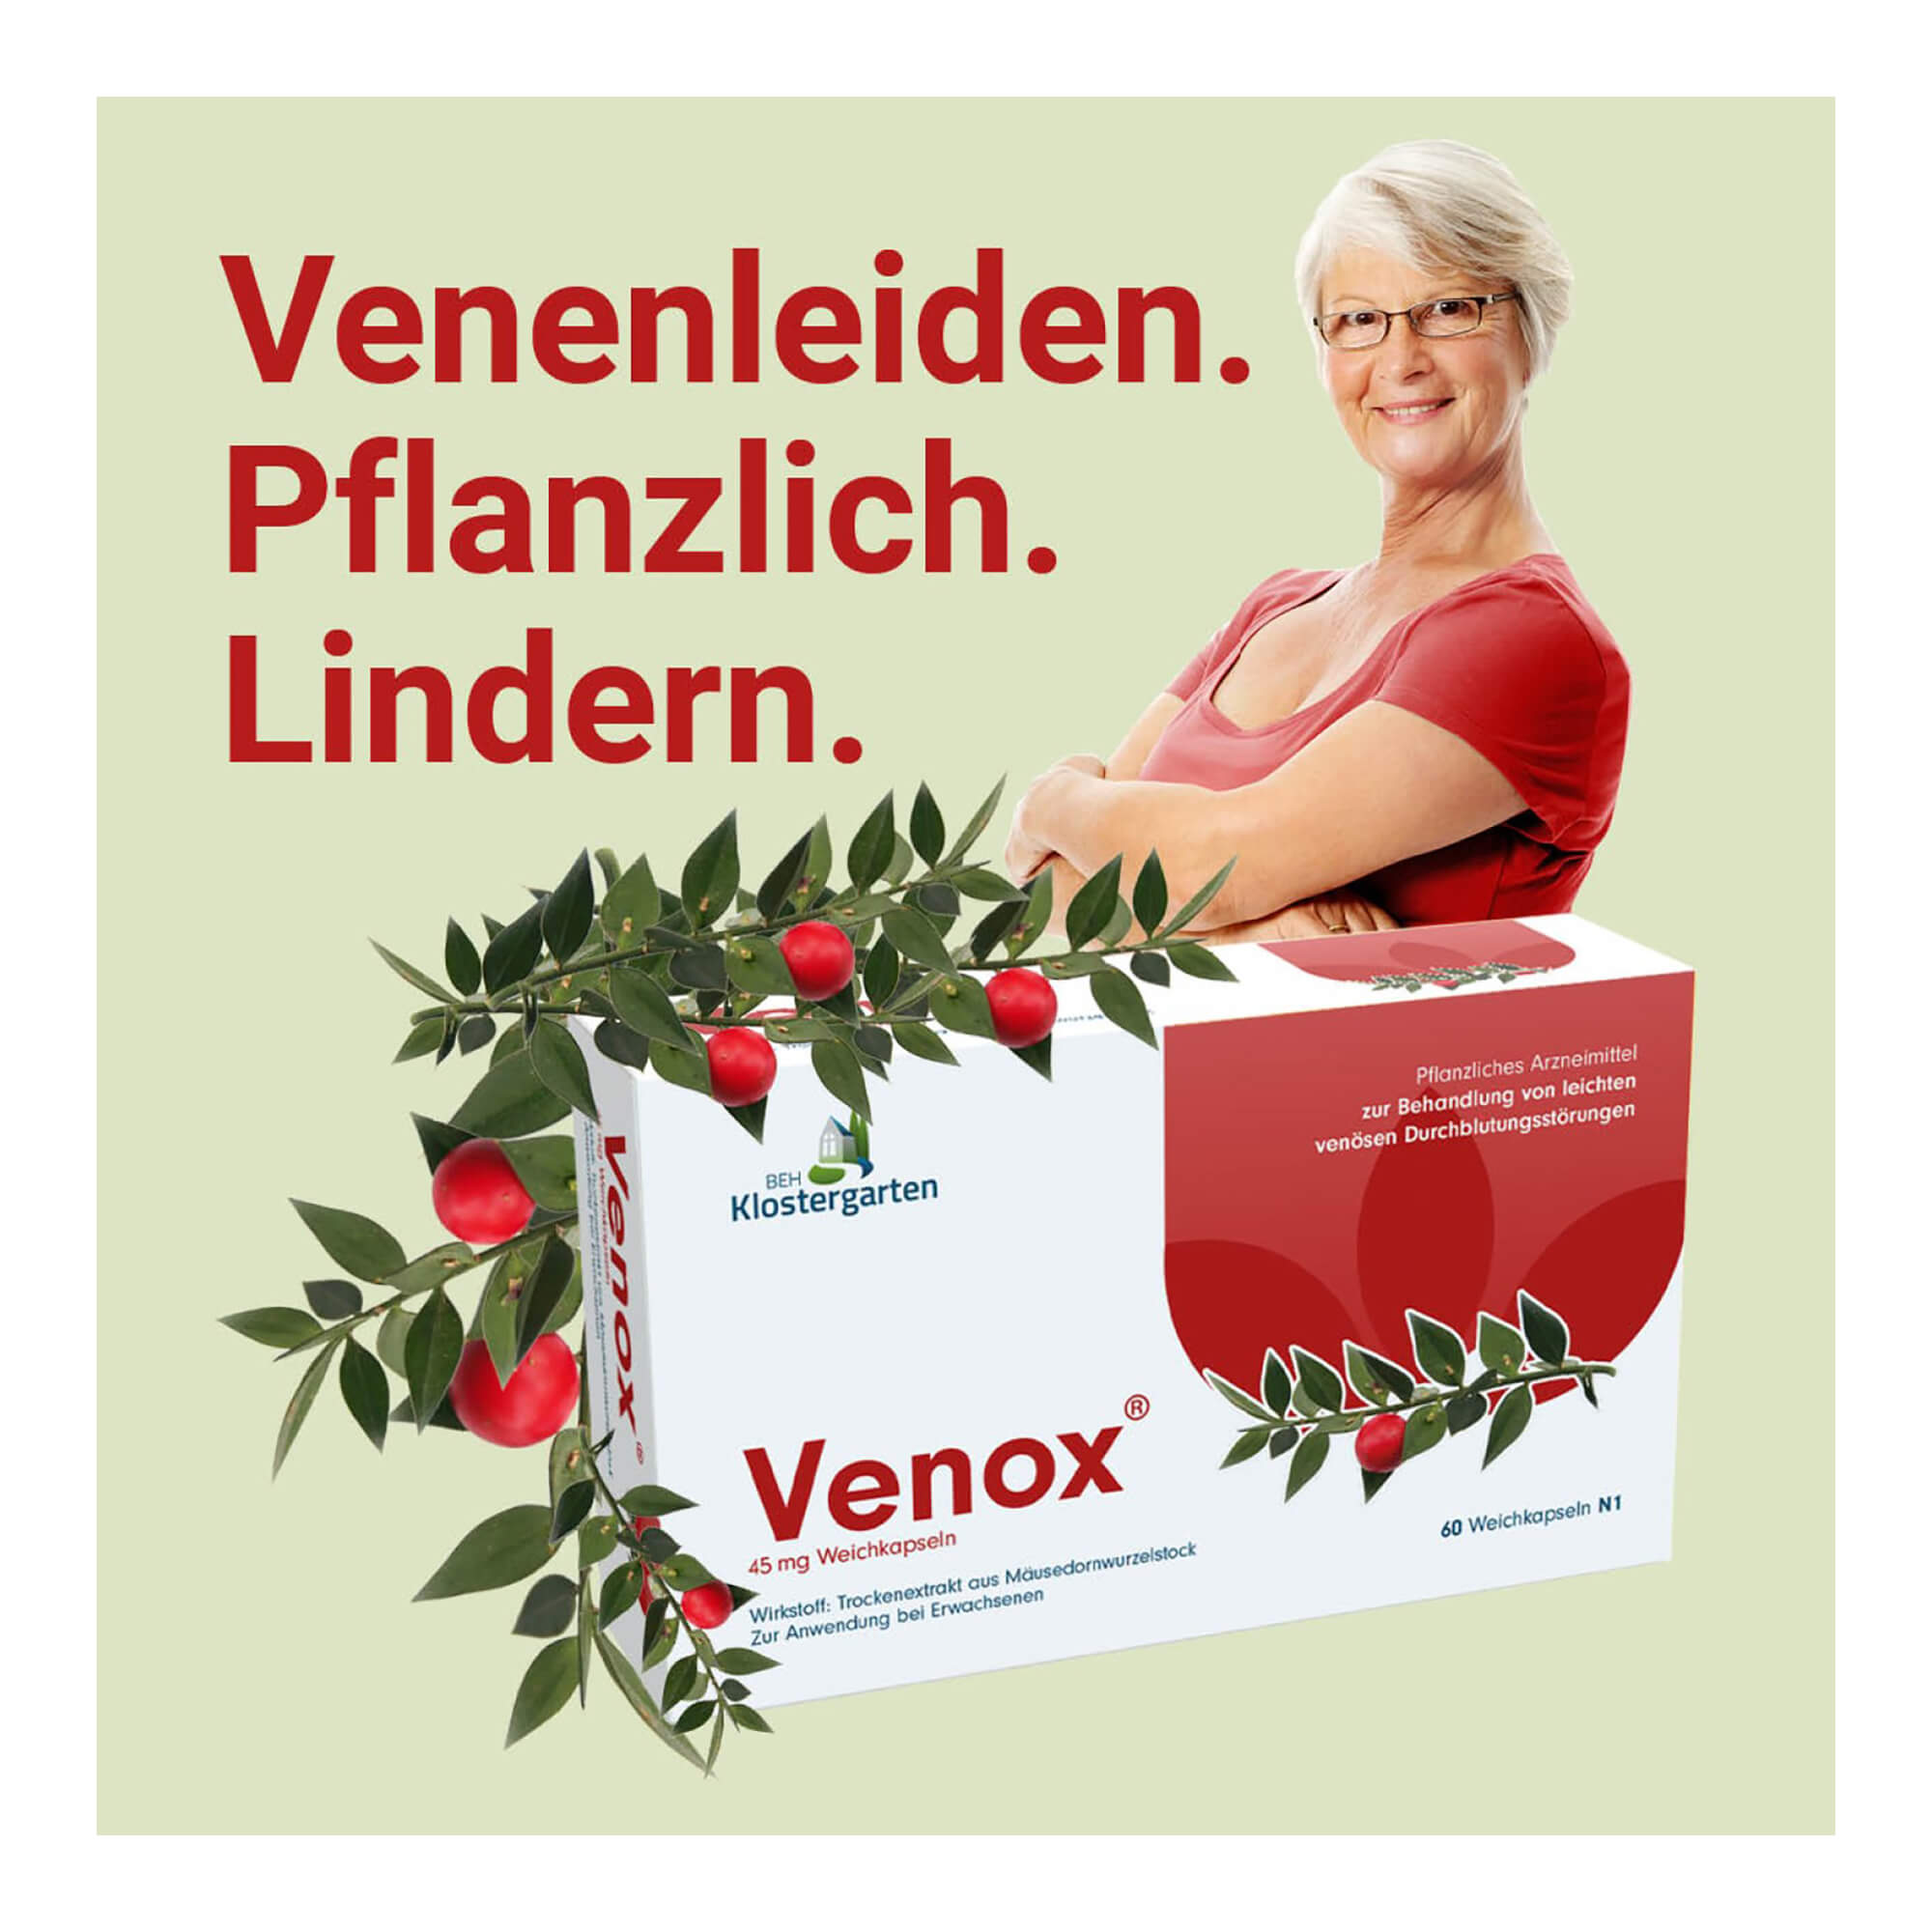 Grafik Venox 45 mg Weichkapseln Venenleiden pflanzlich lindern